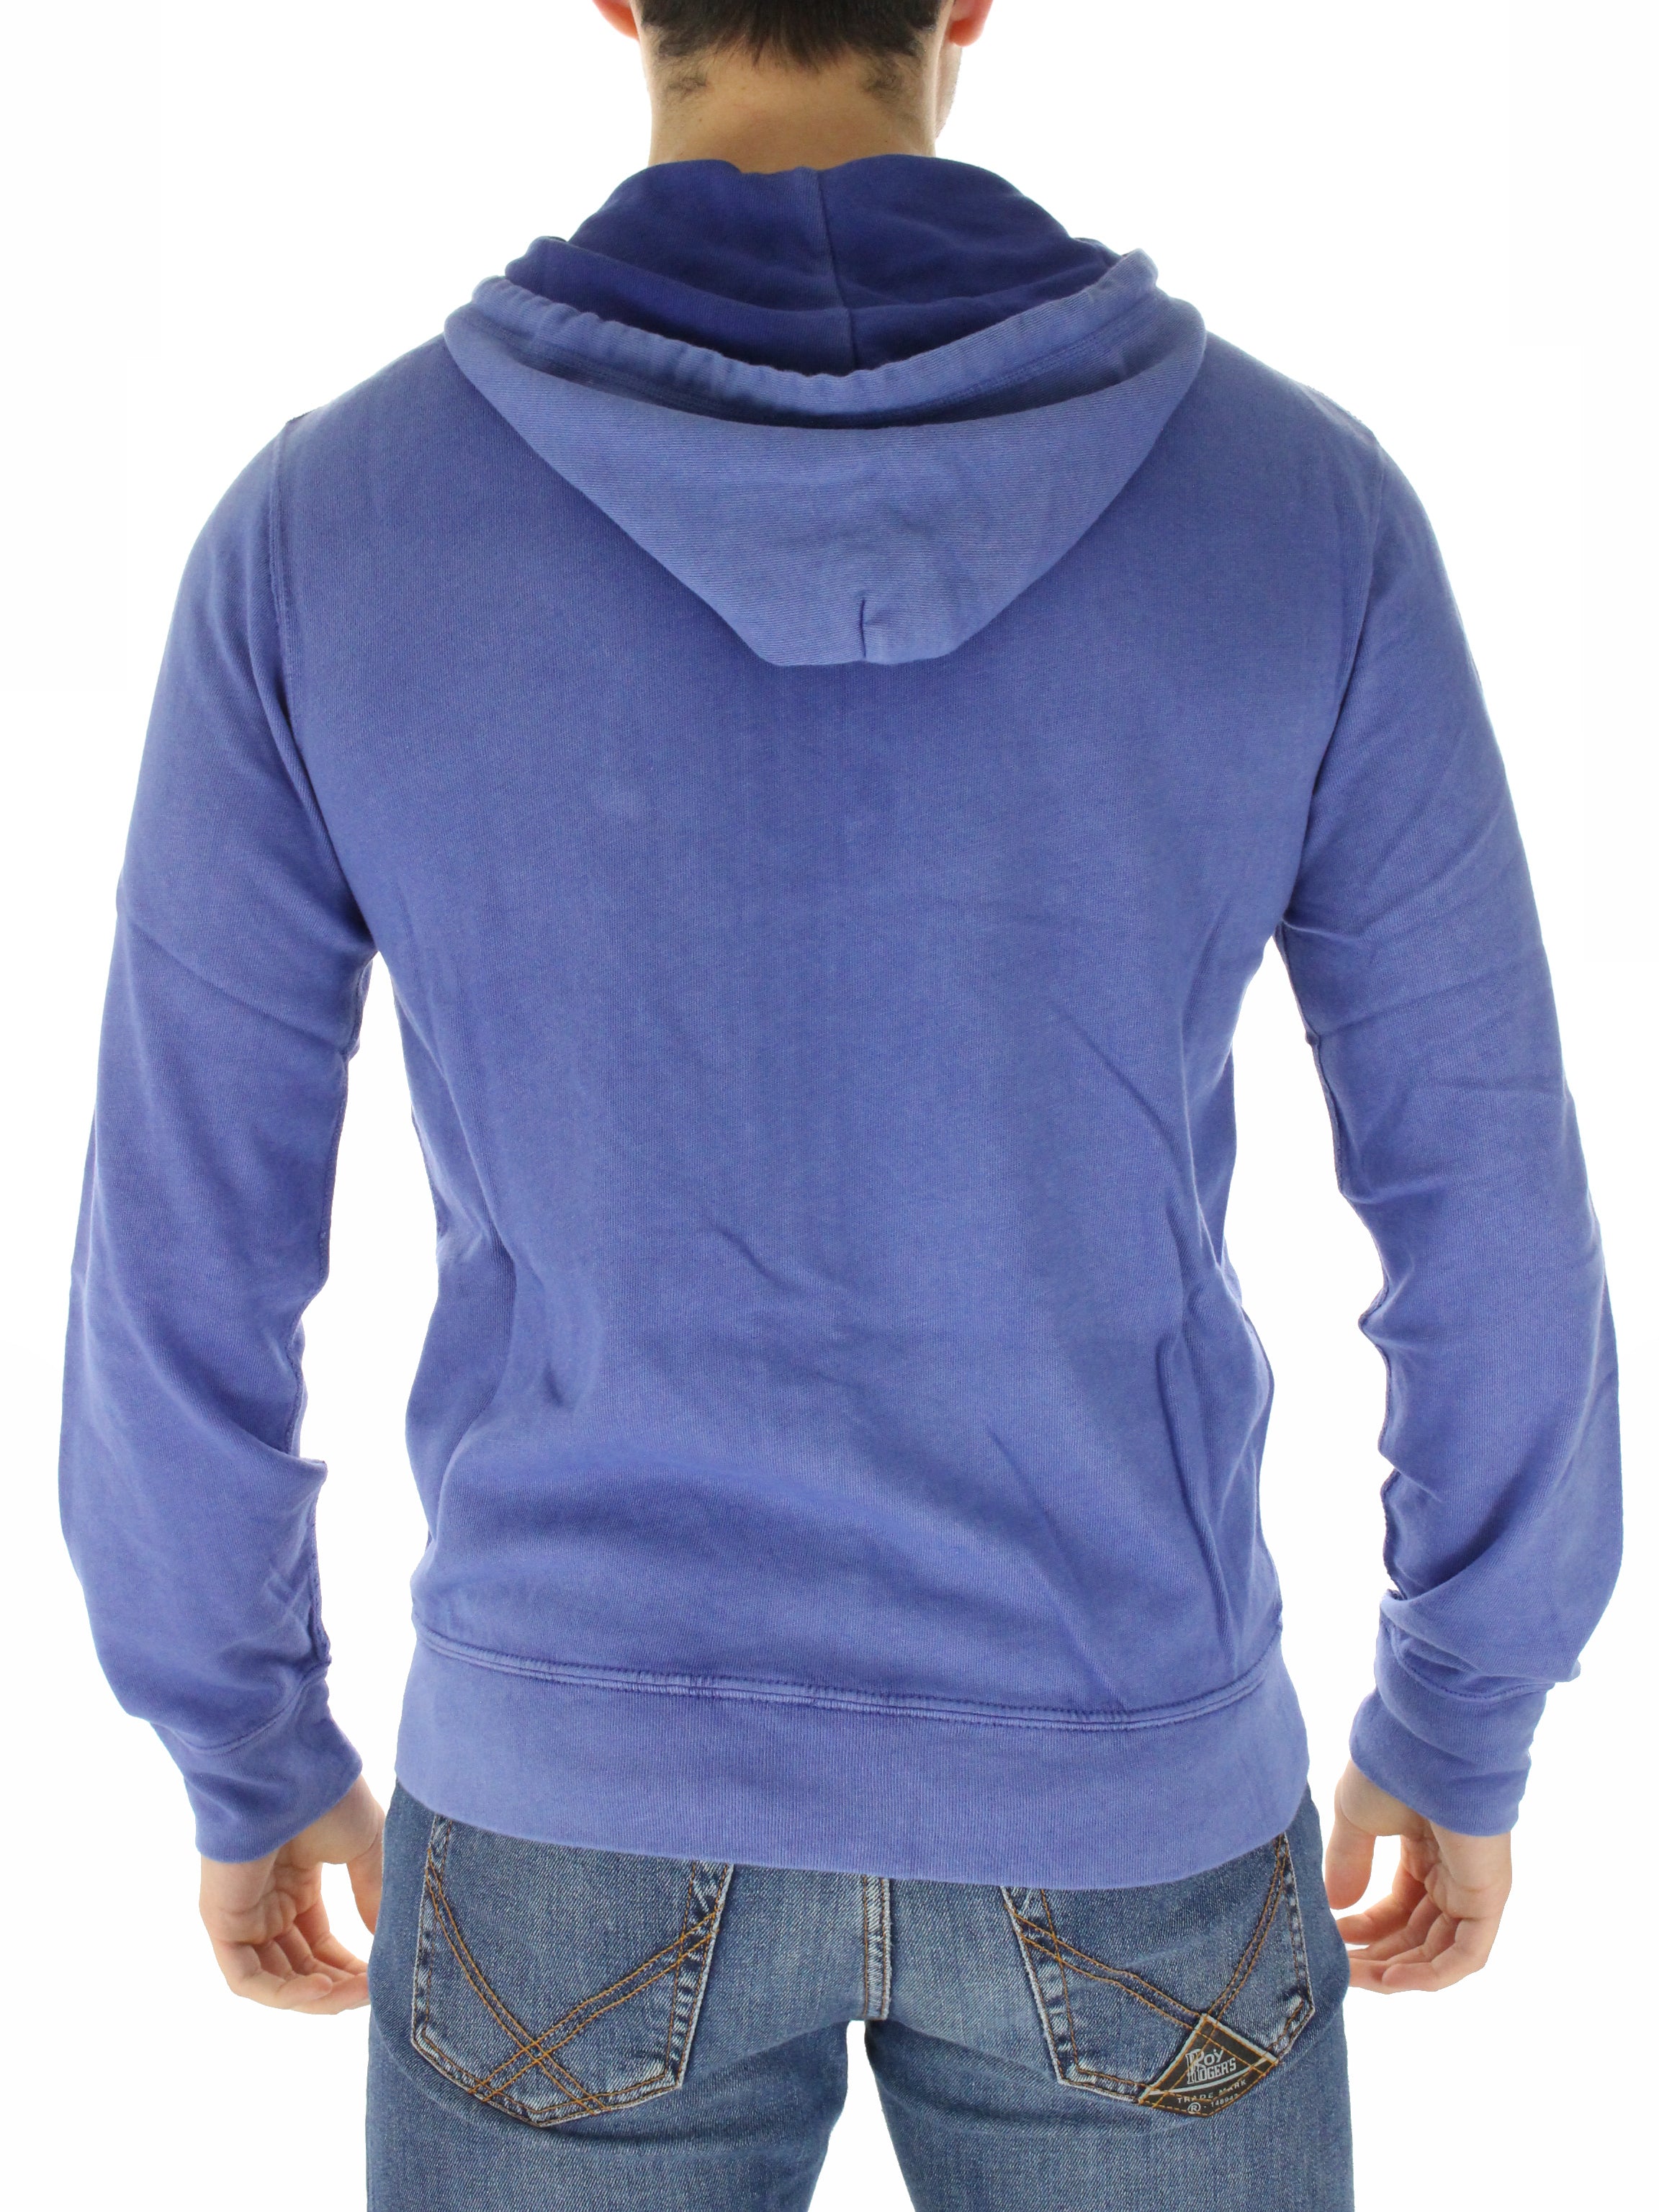 Custom fit 71070634800 Avion hooded zip sweatshirt